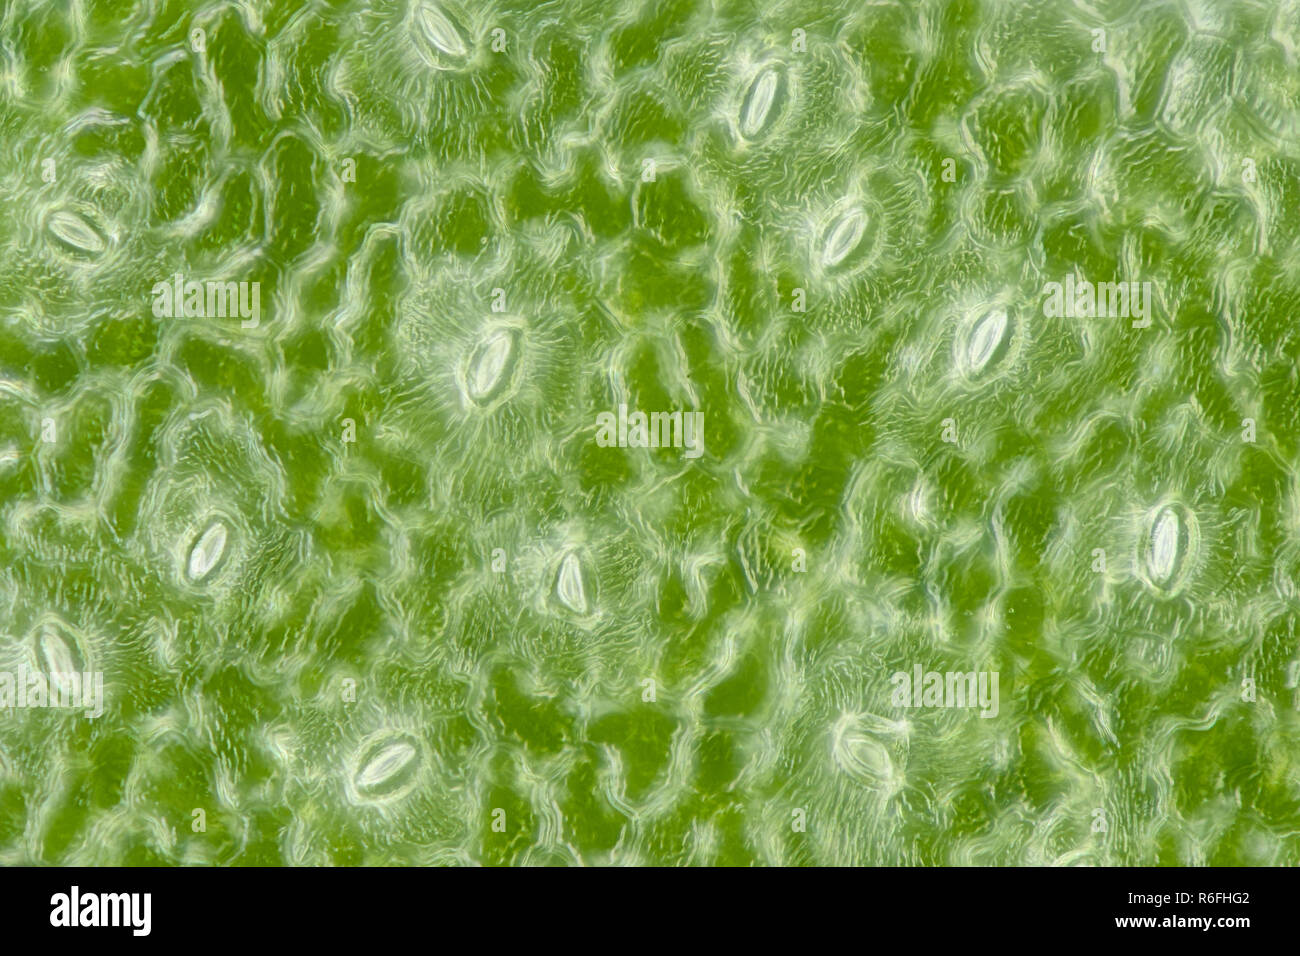 Extremer Vergrößerung - Stomatas in ein grünes Blatt Stockfoto